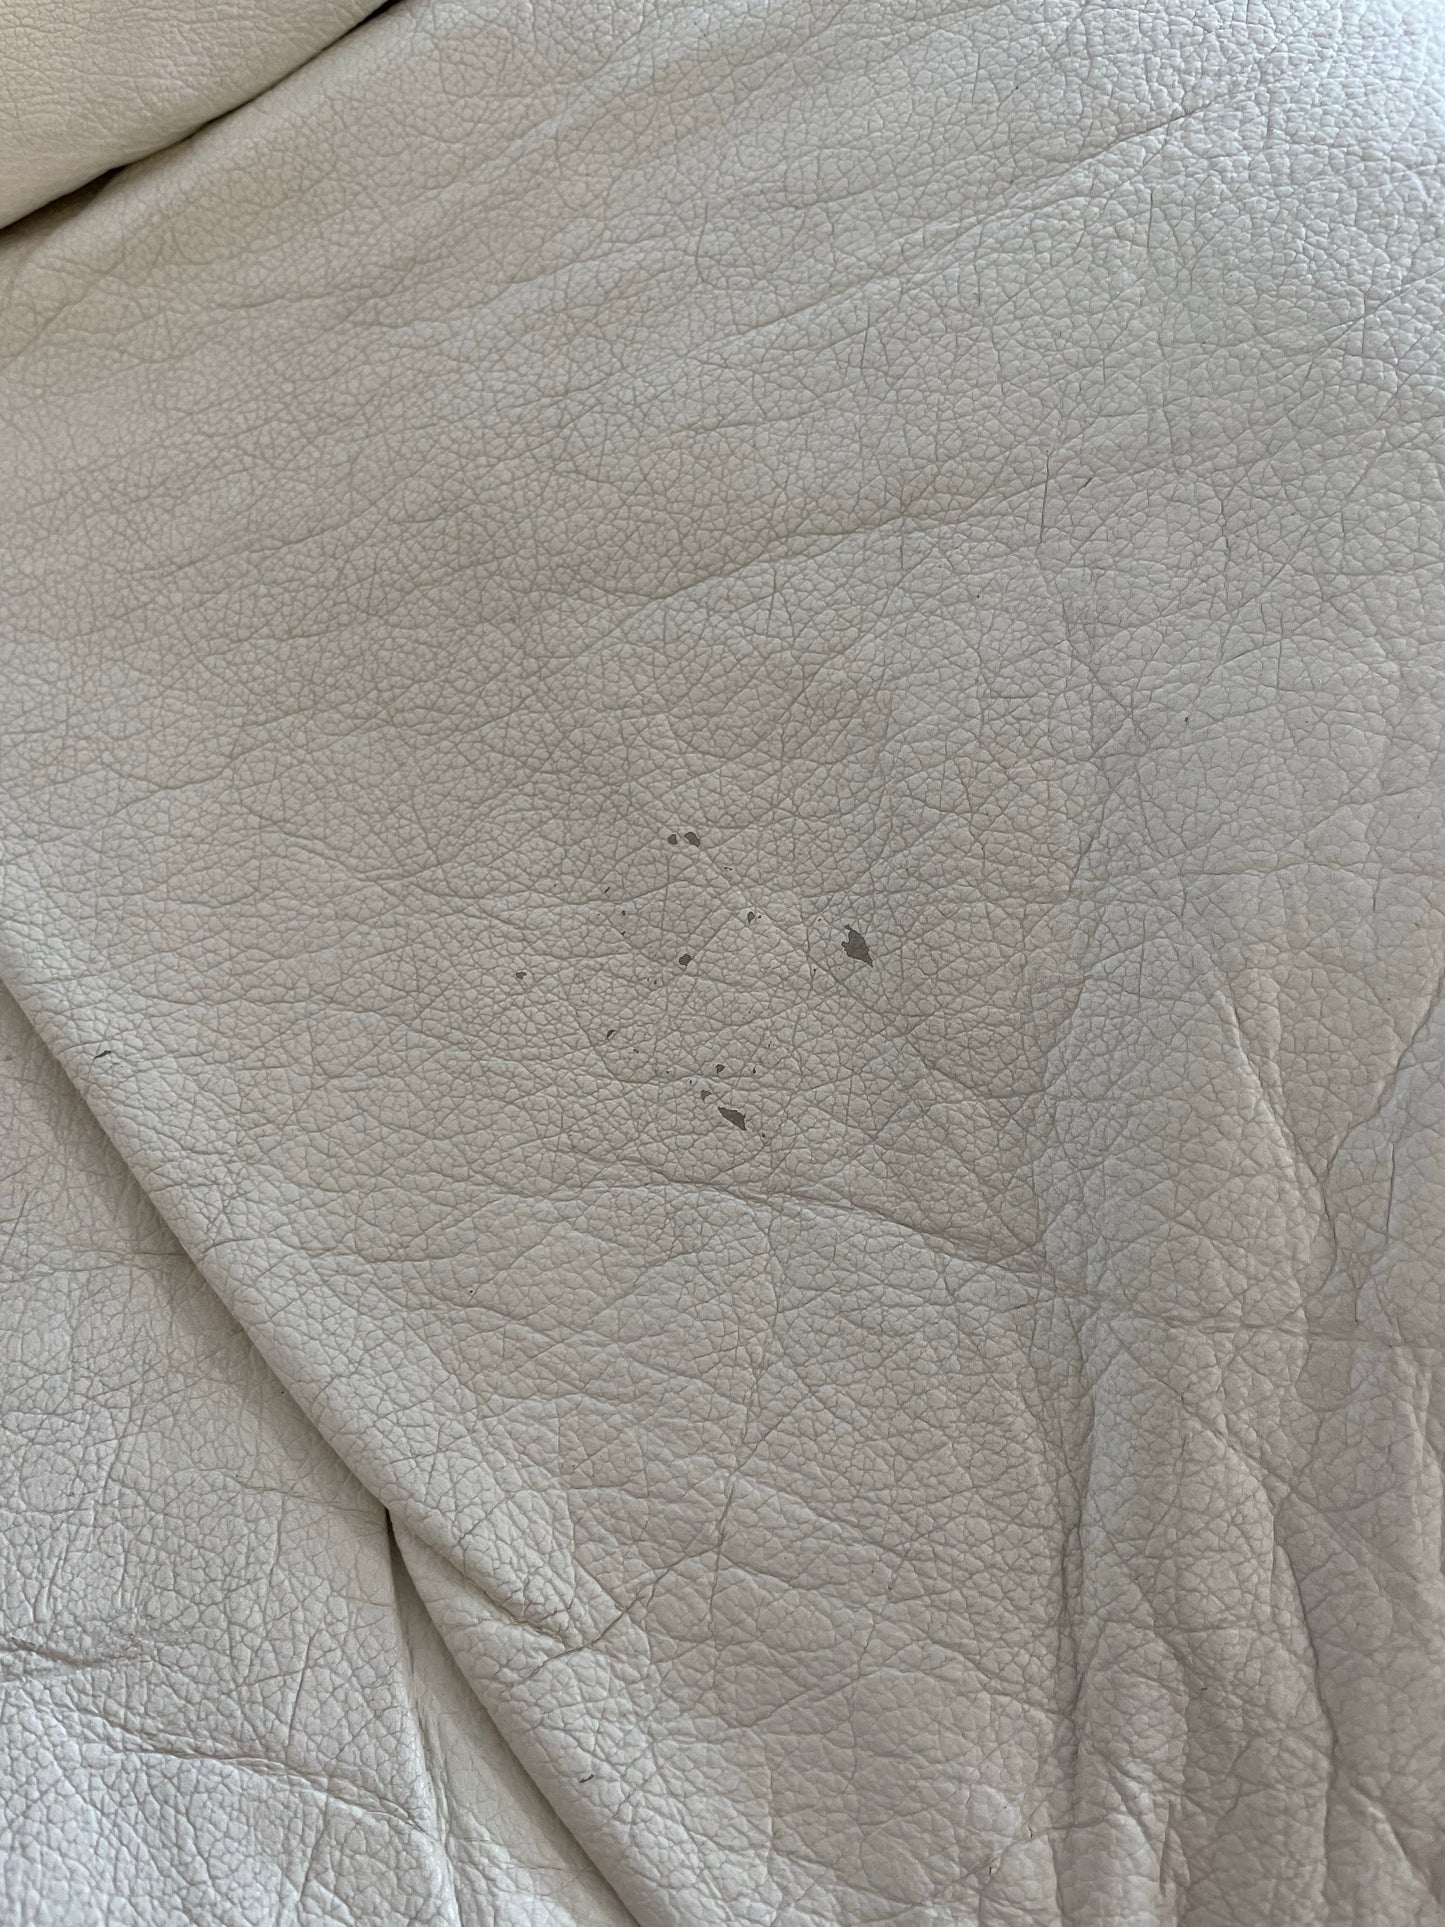 Pomo White Leather Sofa